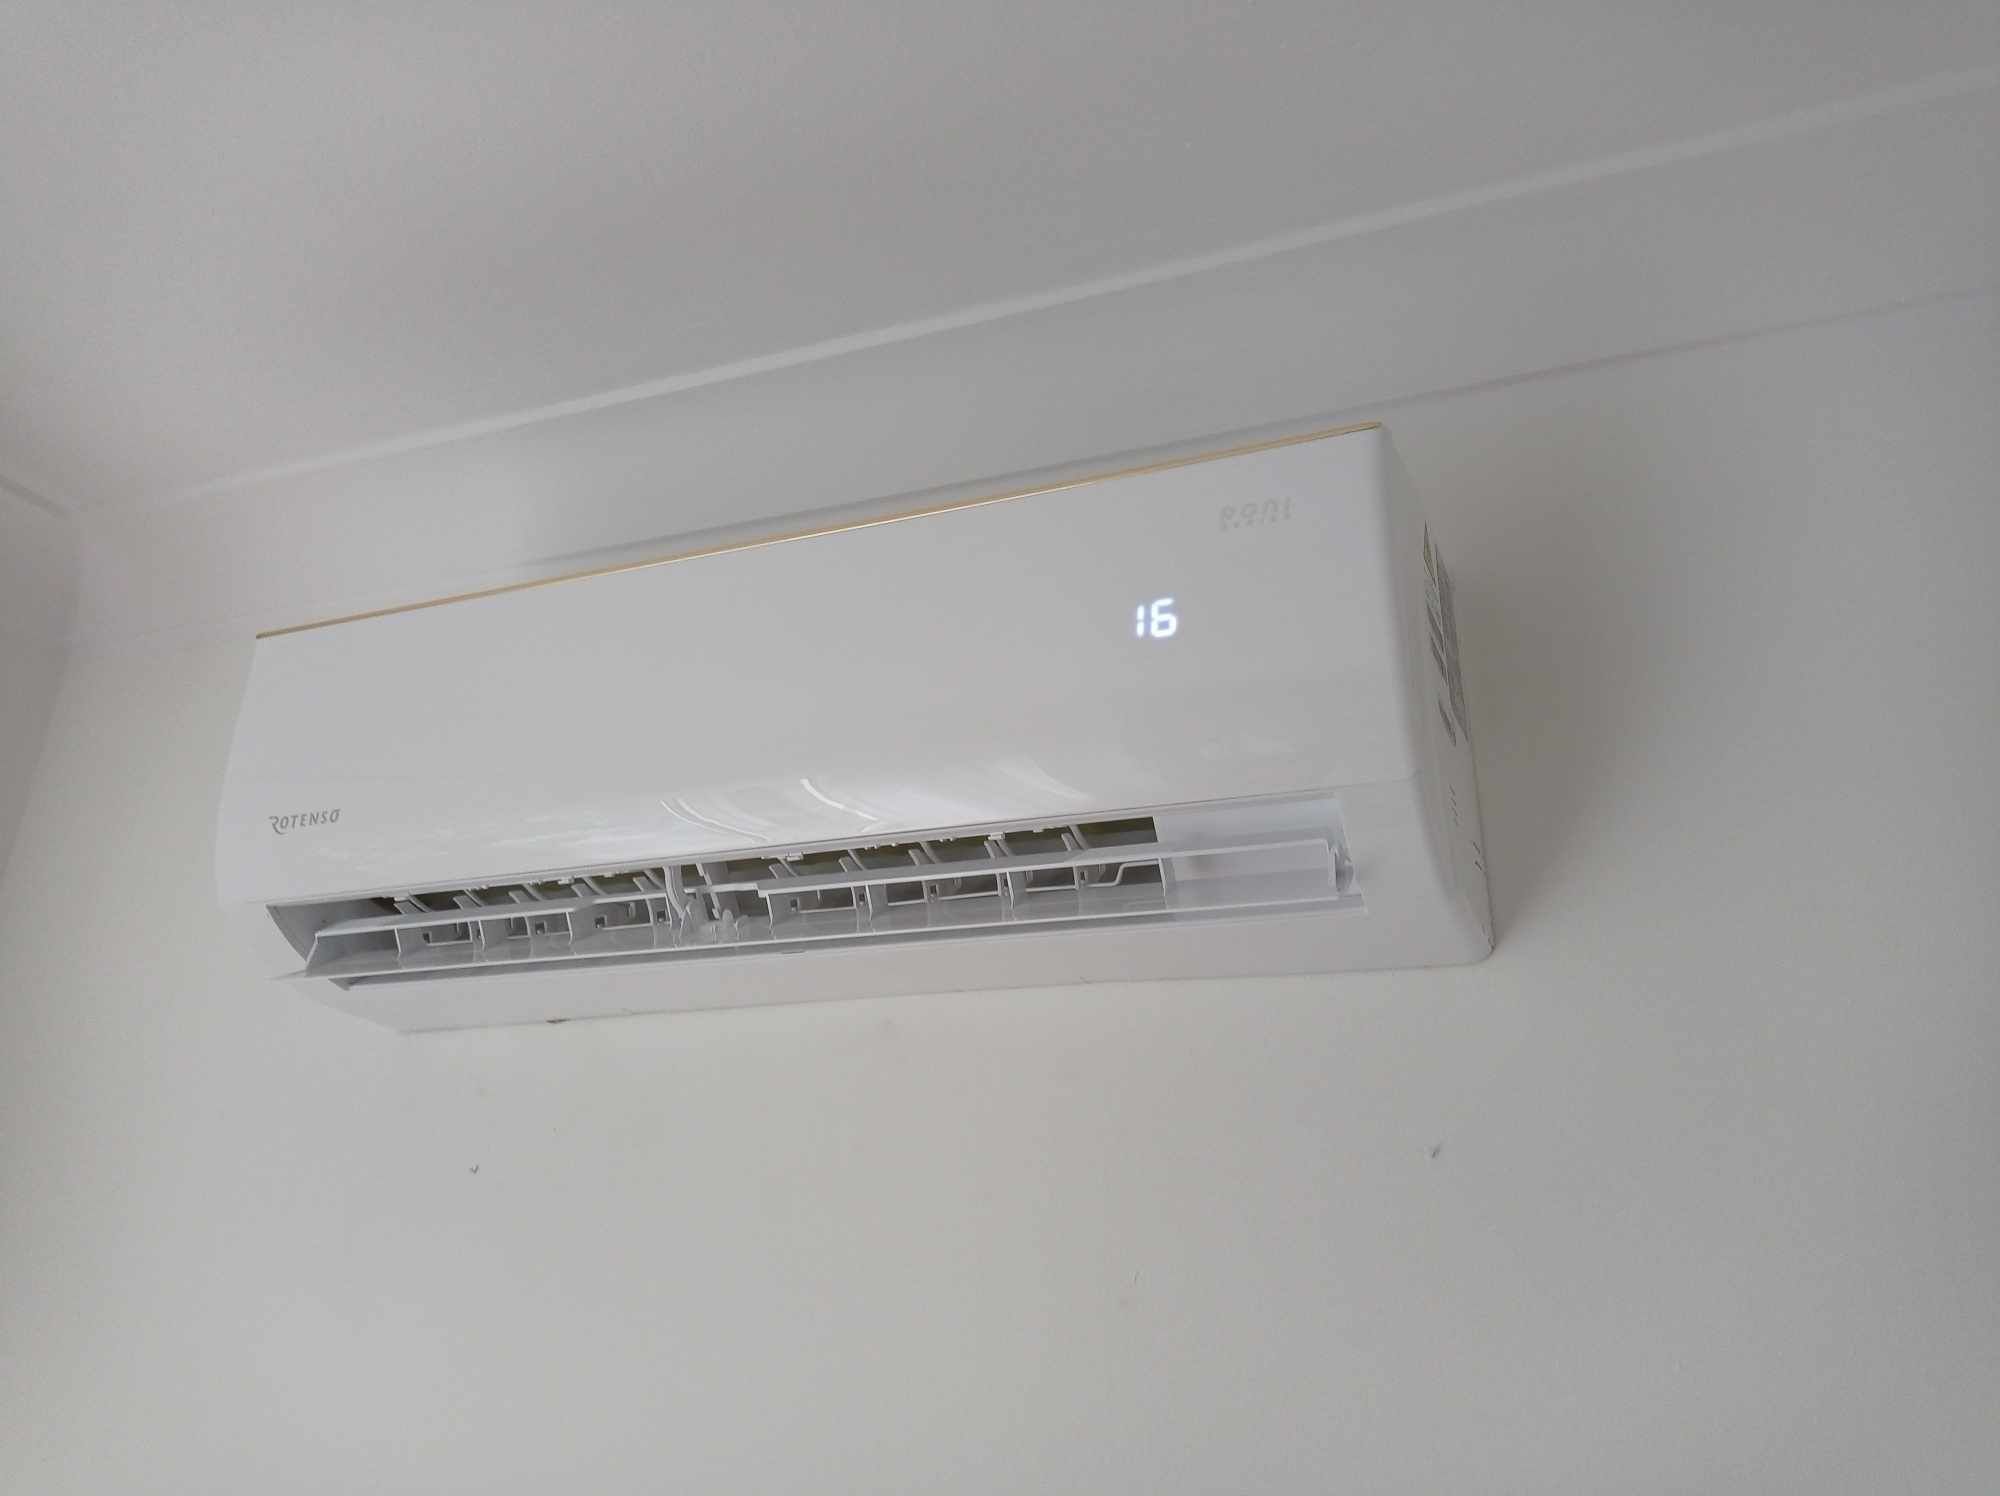 Klimatyzacja z Montażem Serwis do Domu Grzanie Chłodzenie Wifi Pompa C